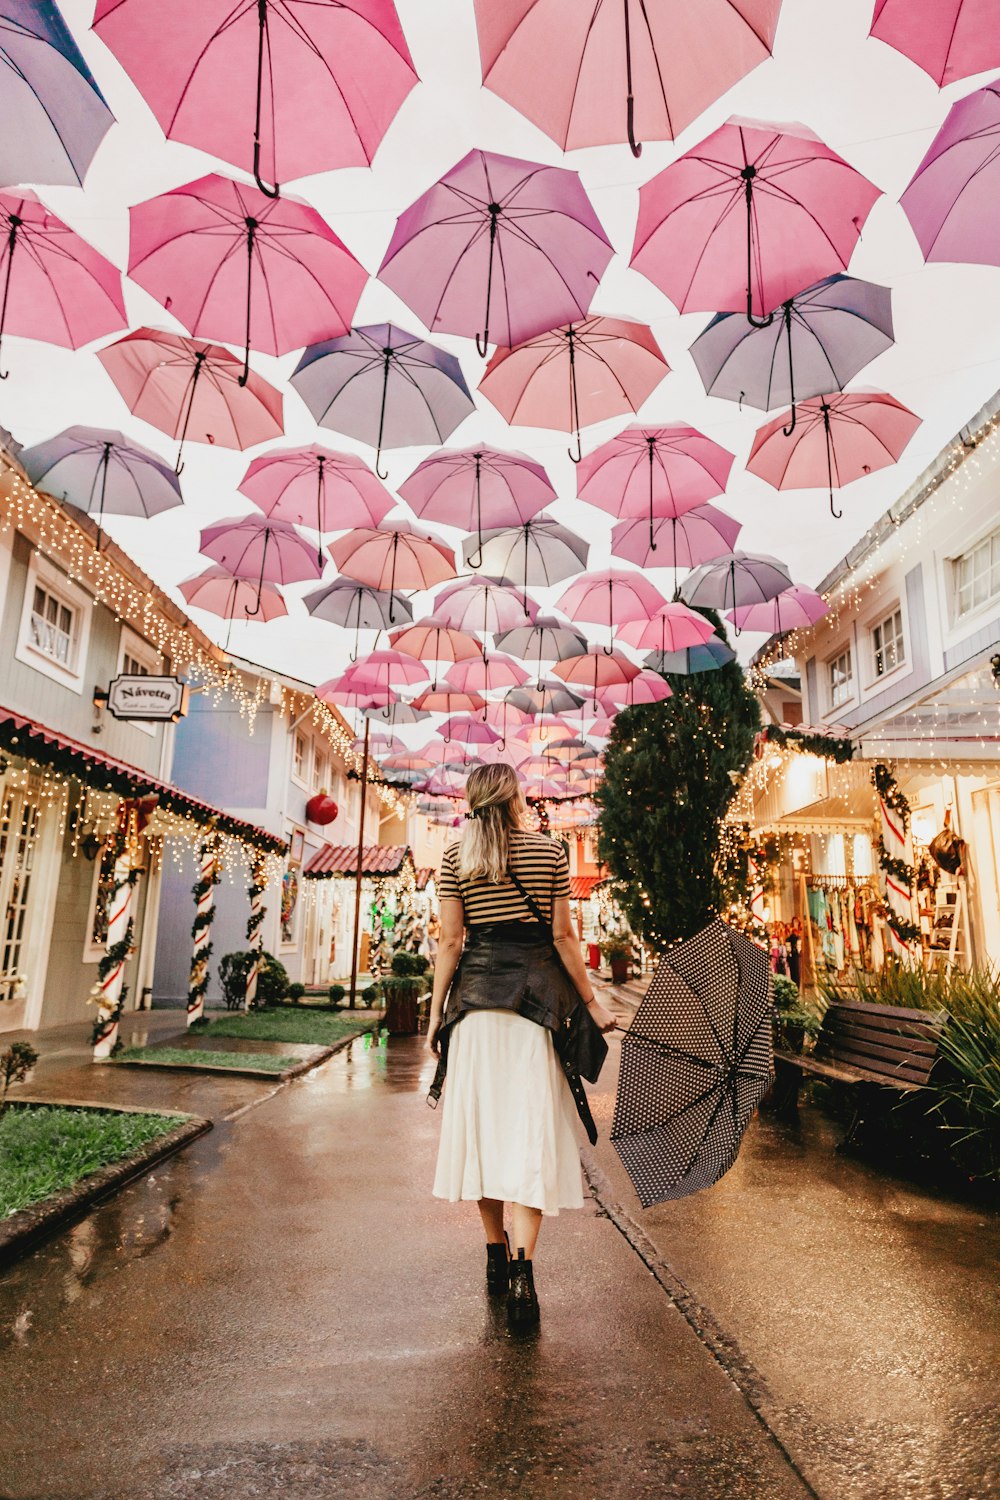 Frau steht unter rosa Regenschirmen